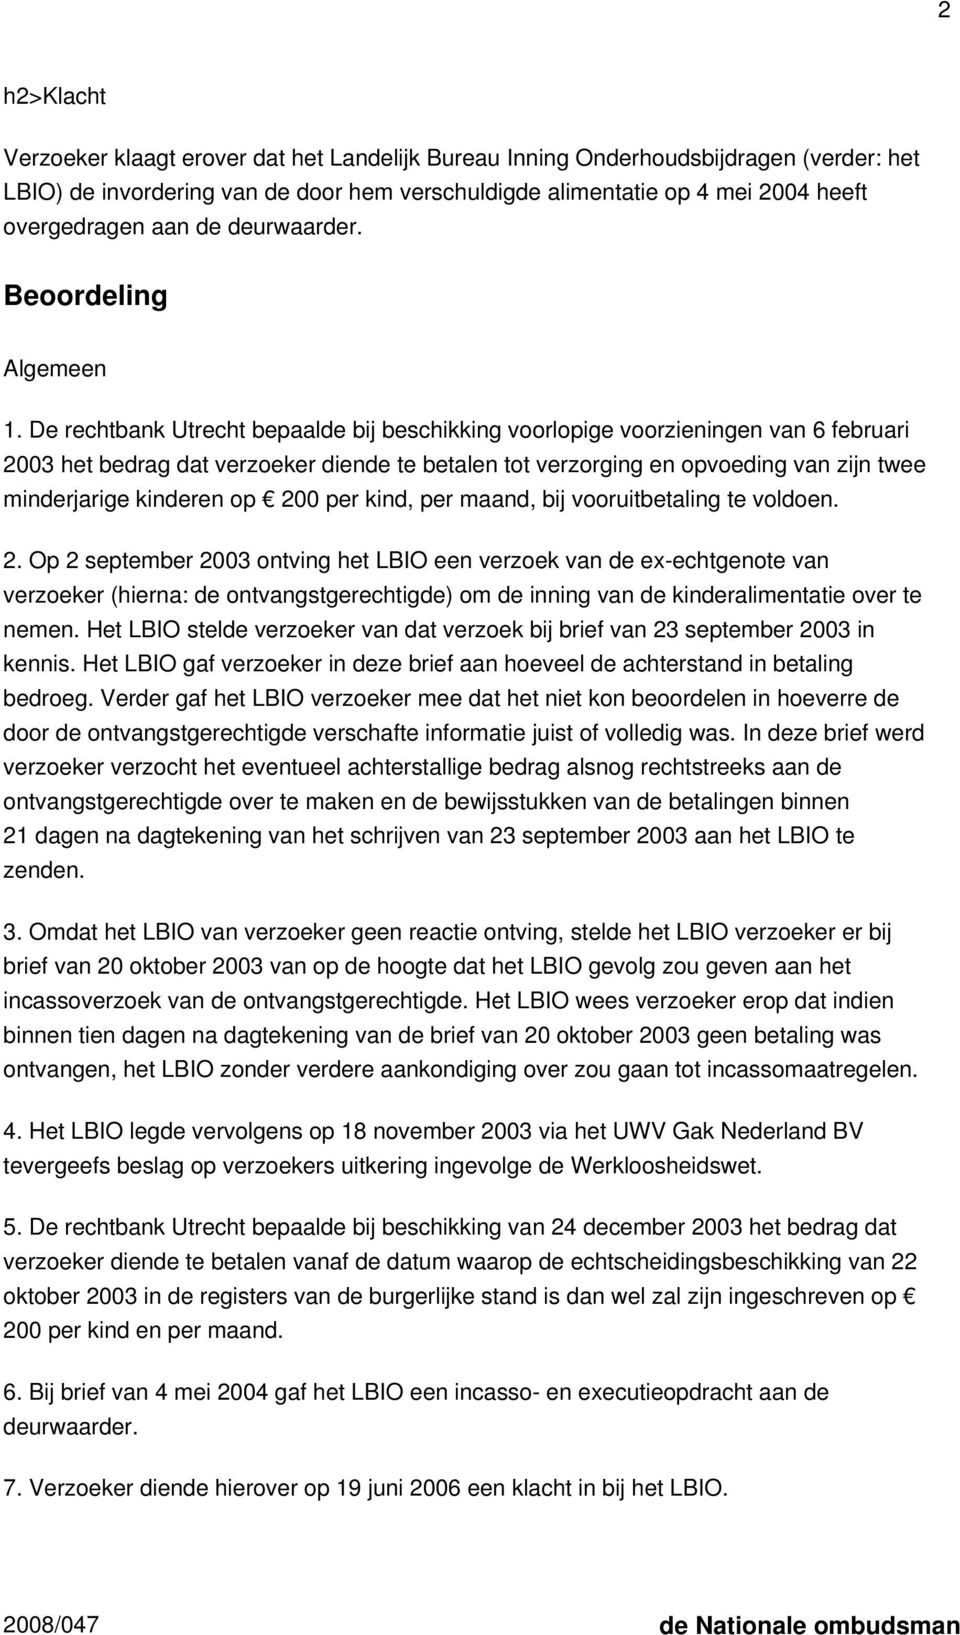 De rechtbank Utrecht bepaalde bij beschikking voorlopige voorzieningen van 6 februari 2003 het bedrag dat verzoeker diende te betalen tot verzorging en opvoeding van zijn twee minderjarige kinderen